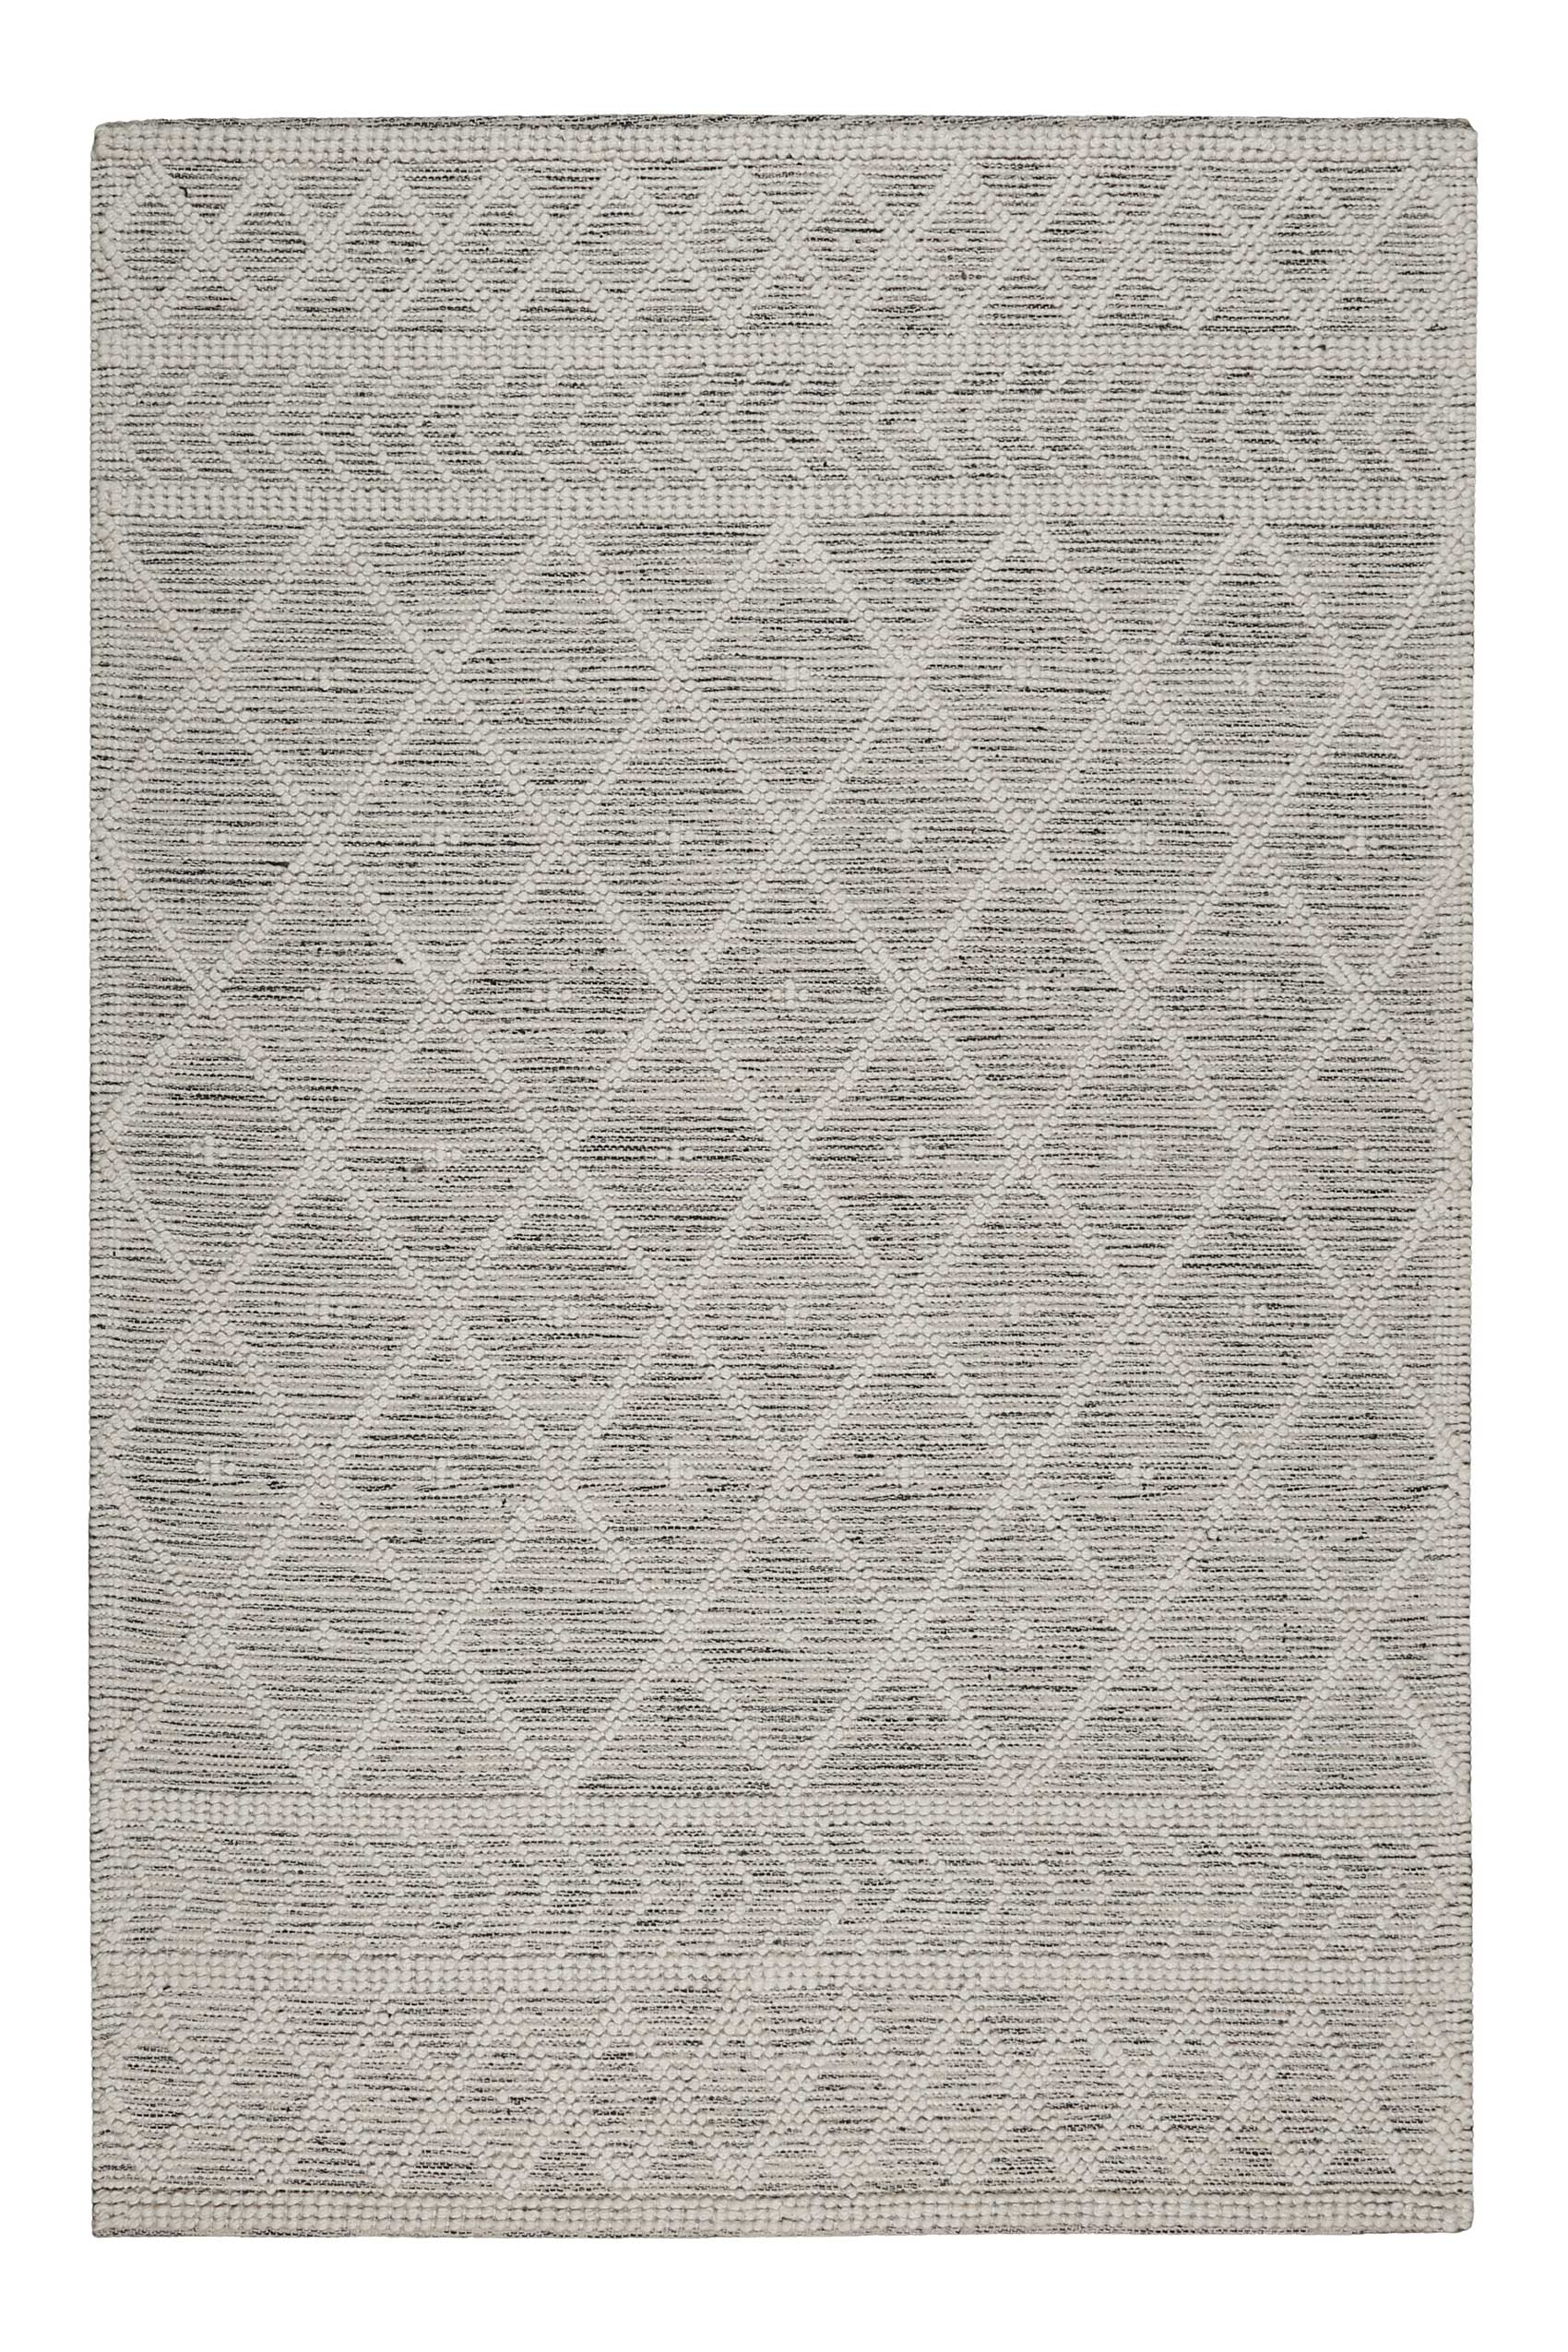 Esprit Teppich handgewebt Weiß Hellgrau aus Wolle » Lia « - Ansicht 1